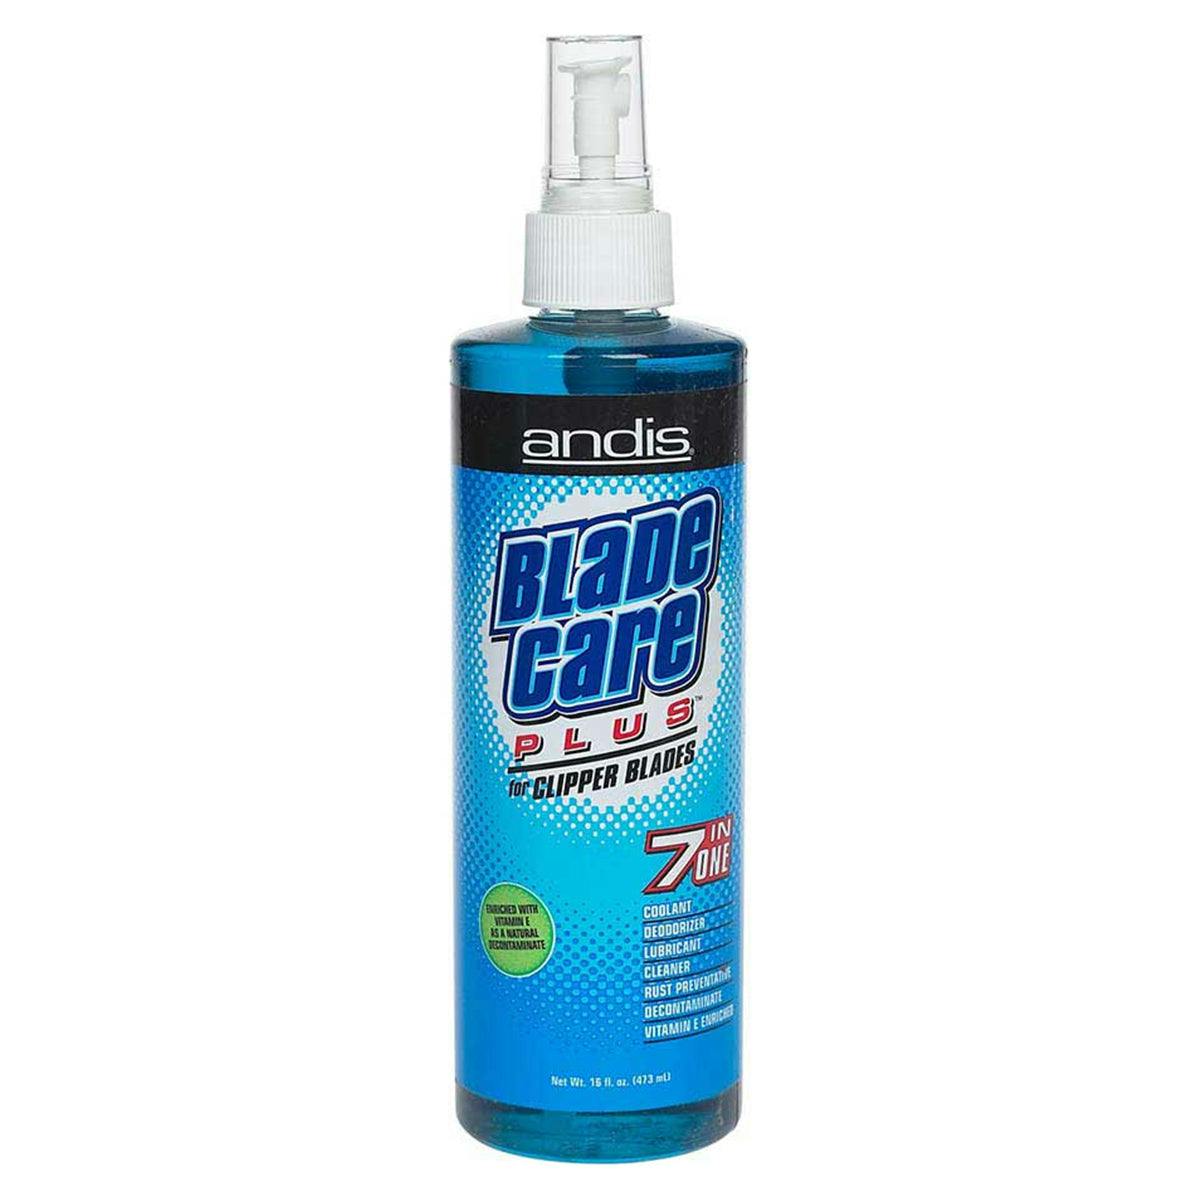 Andis Blade Care Plus Spray